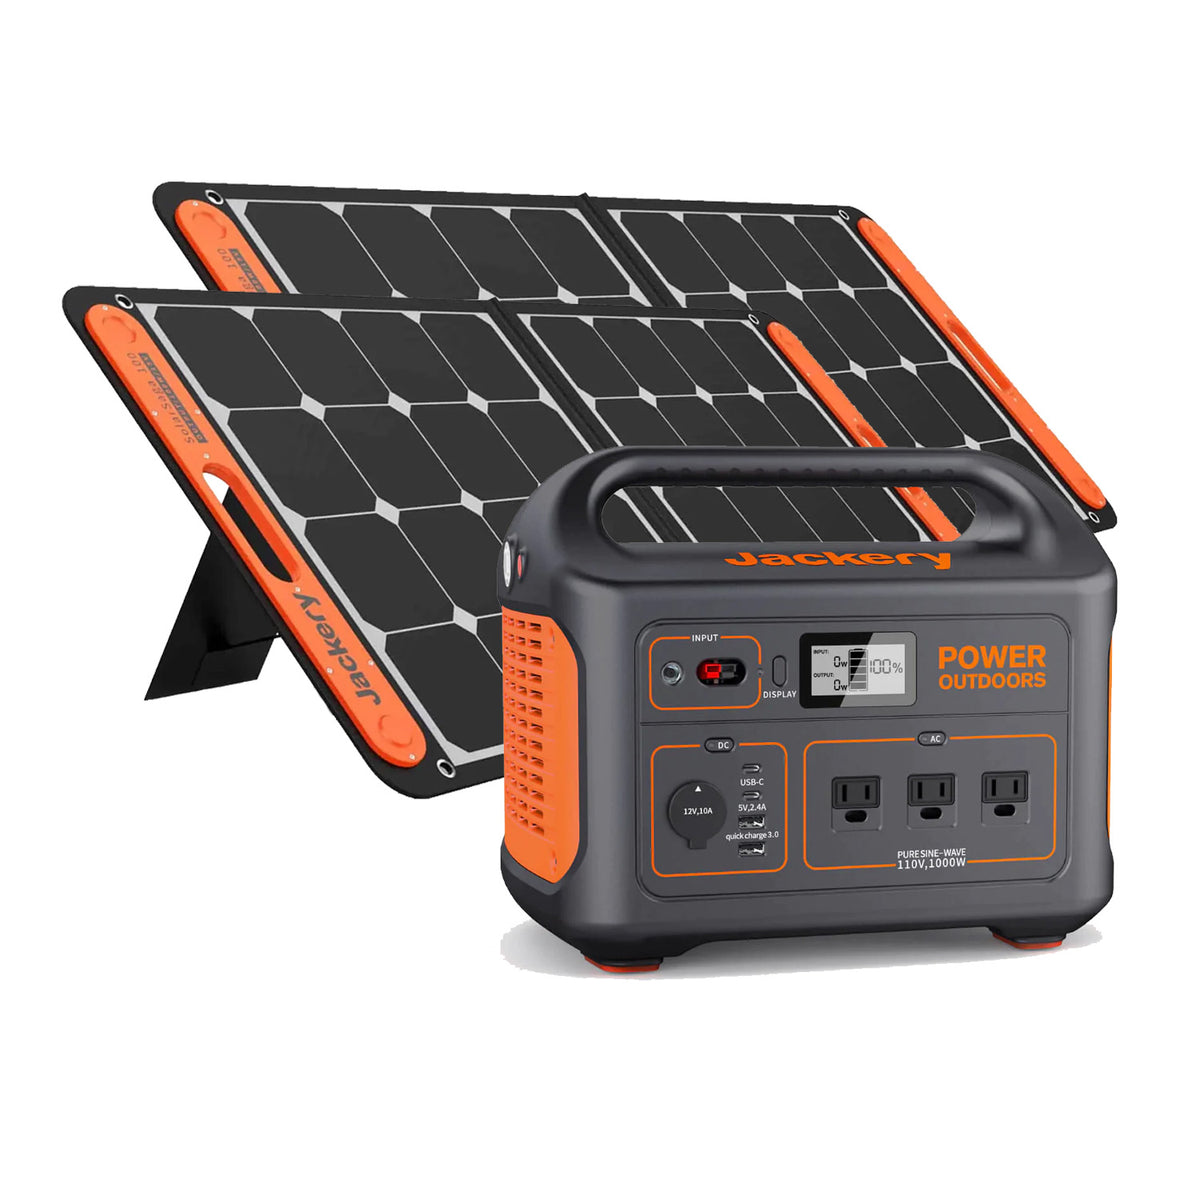 Jackery Solar Generator 880 | Explorer 880 + 2 x SolarSaga 100W 